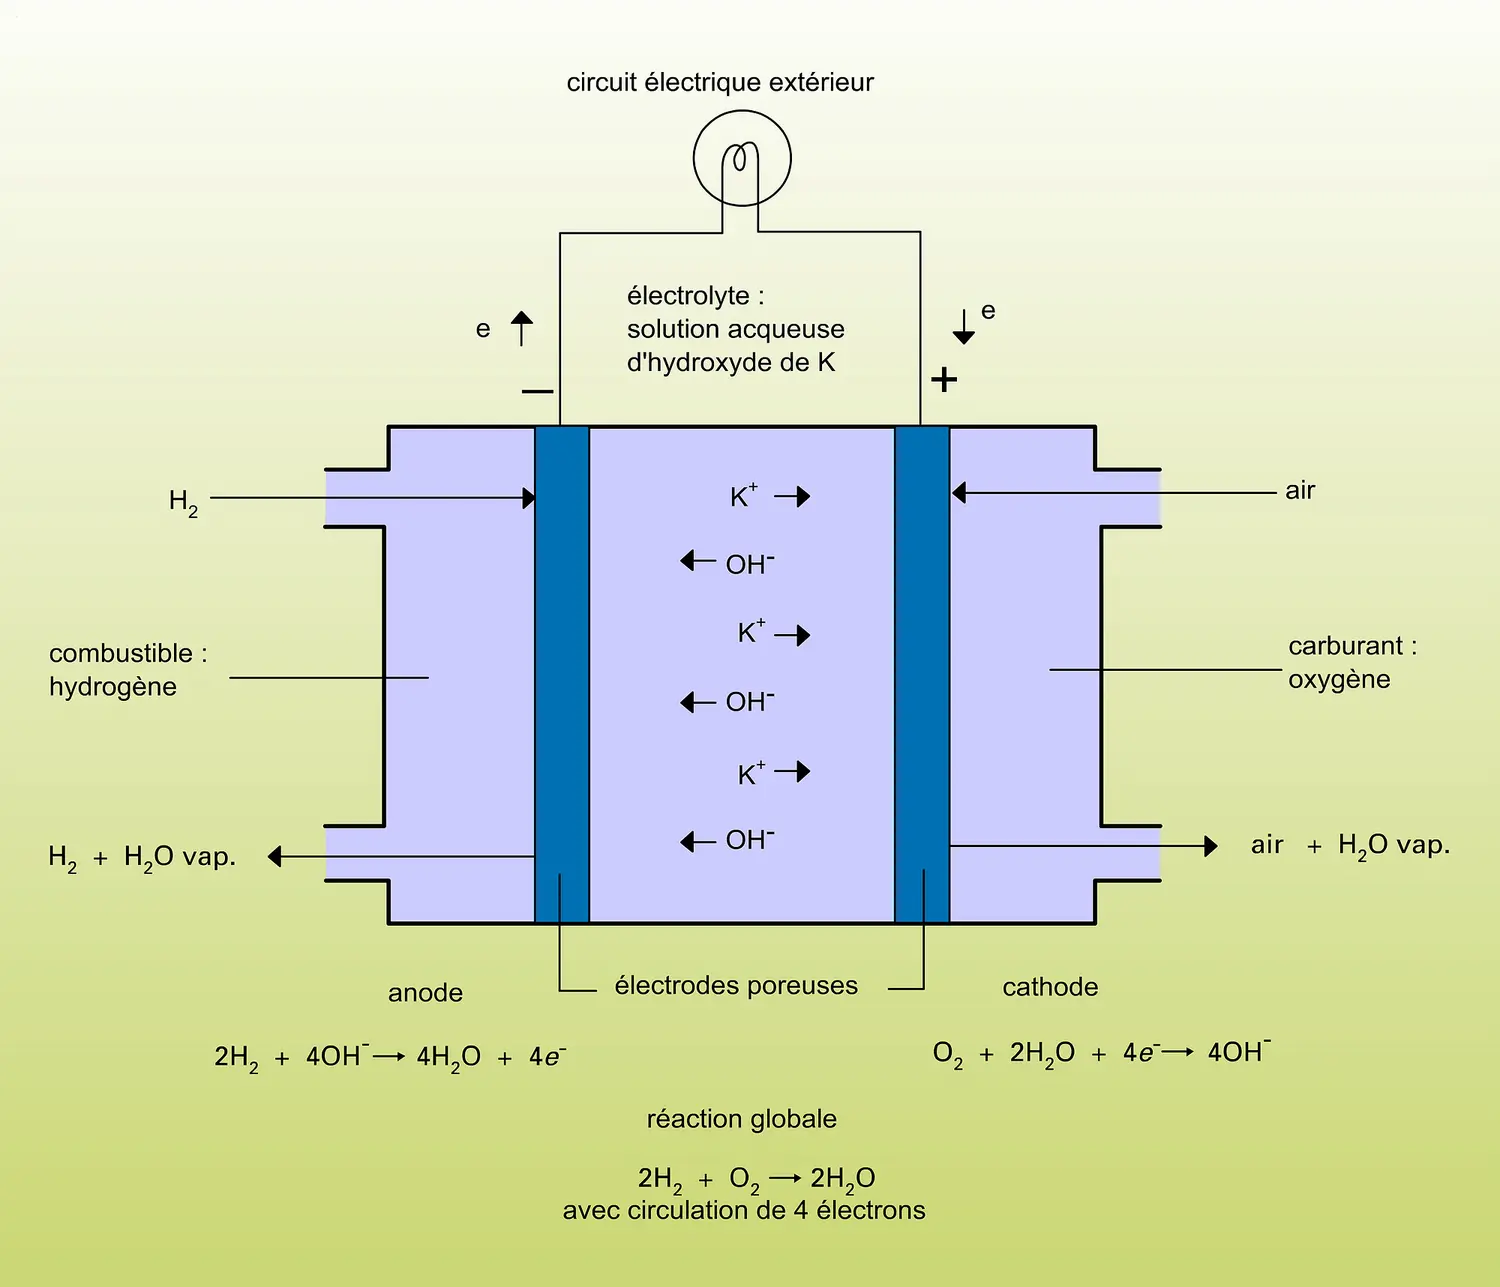 Pile à hydrogène, oxygène et solution d'hydroxyde de potassium